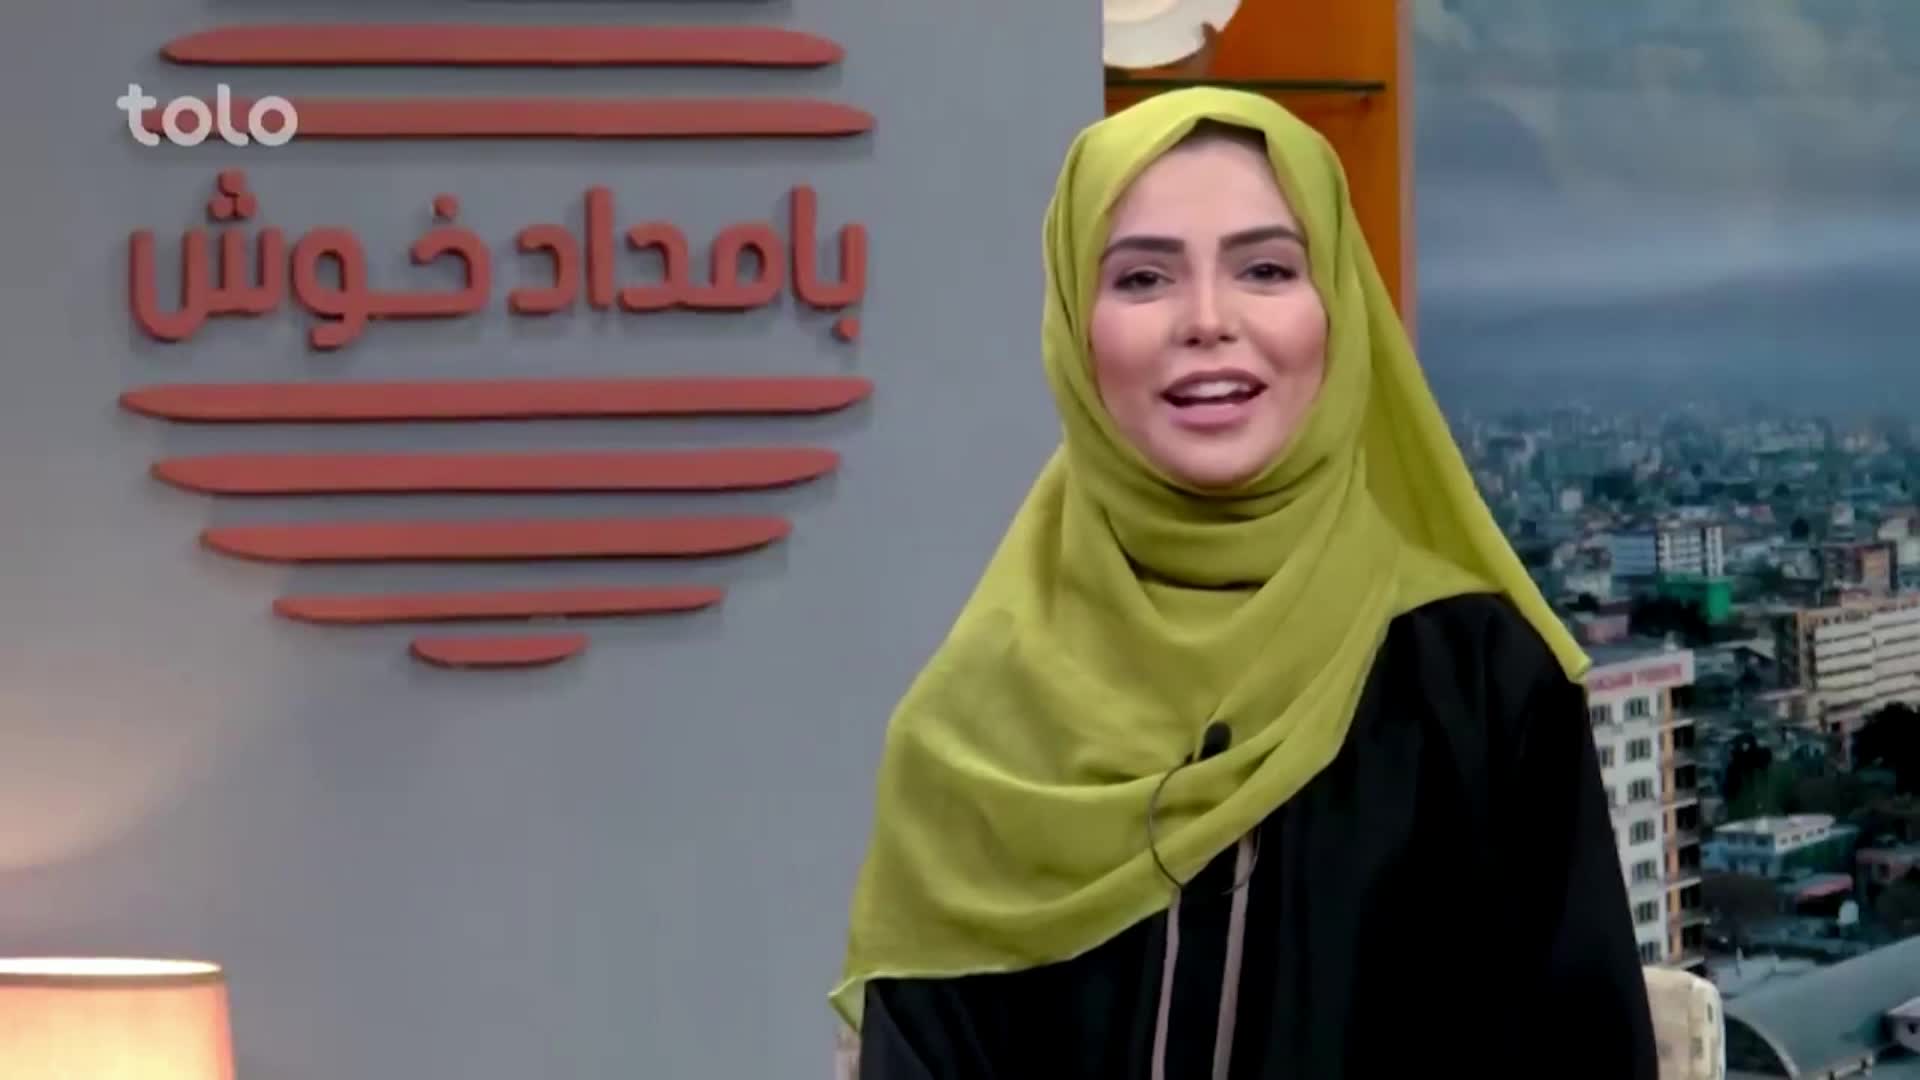 여성 앵커의 얼굴을 가리는 조치가 시행되기 이전인 지난해 9월, 톨로뉴스의 아침 방송에서 여성 앵커가 히잡을 착용한 채 프로그램을 진행하는 모습.